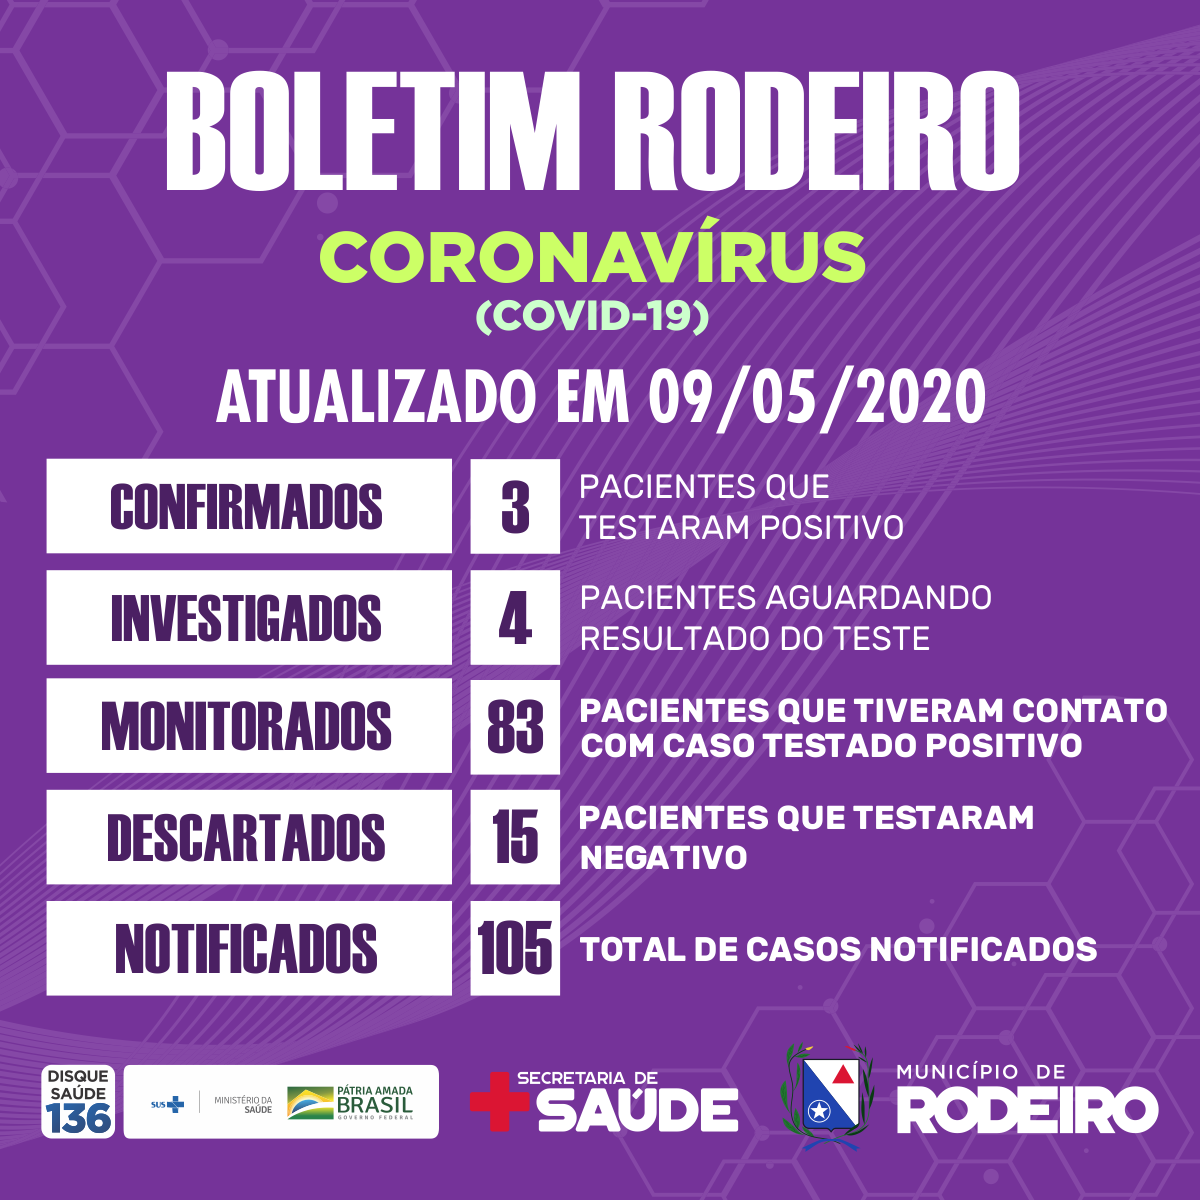 Boletim epidemiológico do Município de Rodeiro coronavírus, atualizado em 09/05/2020